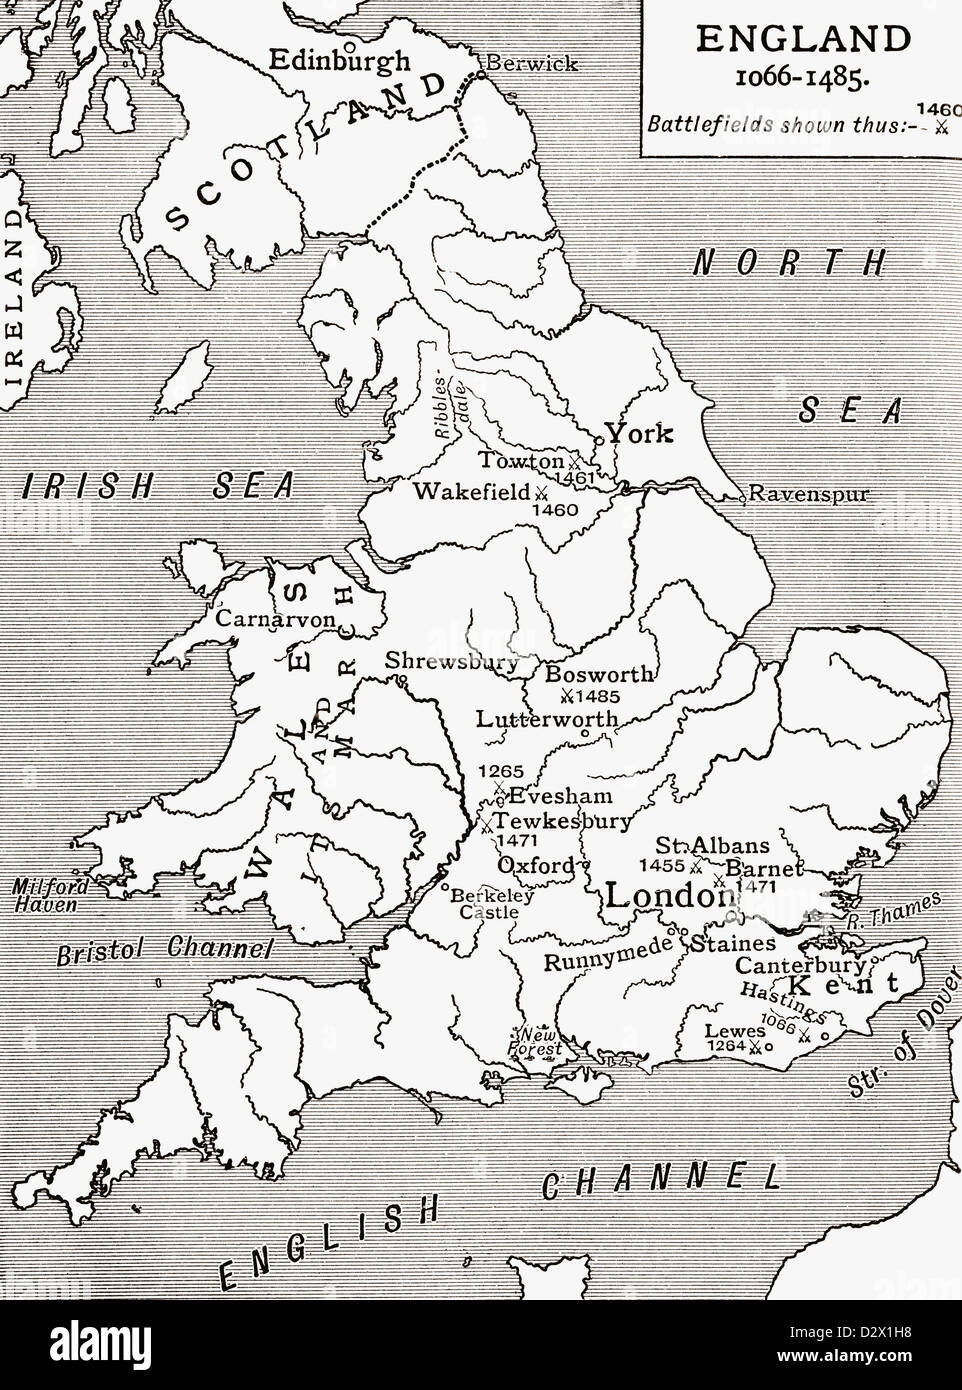 Eine Landkarte von England 1066-1485, Schlachtfelder mit gekreuzten Schwertern gekennzeichnet. Aus einer ersten Buch der britischen Geschichte veröffentlicht 1925. Stockfoto